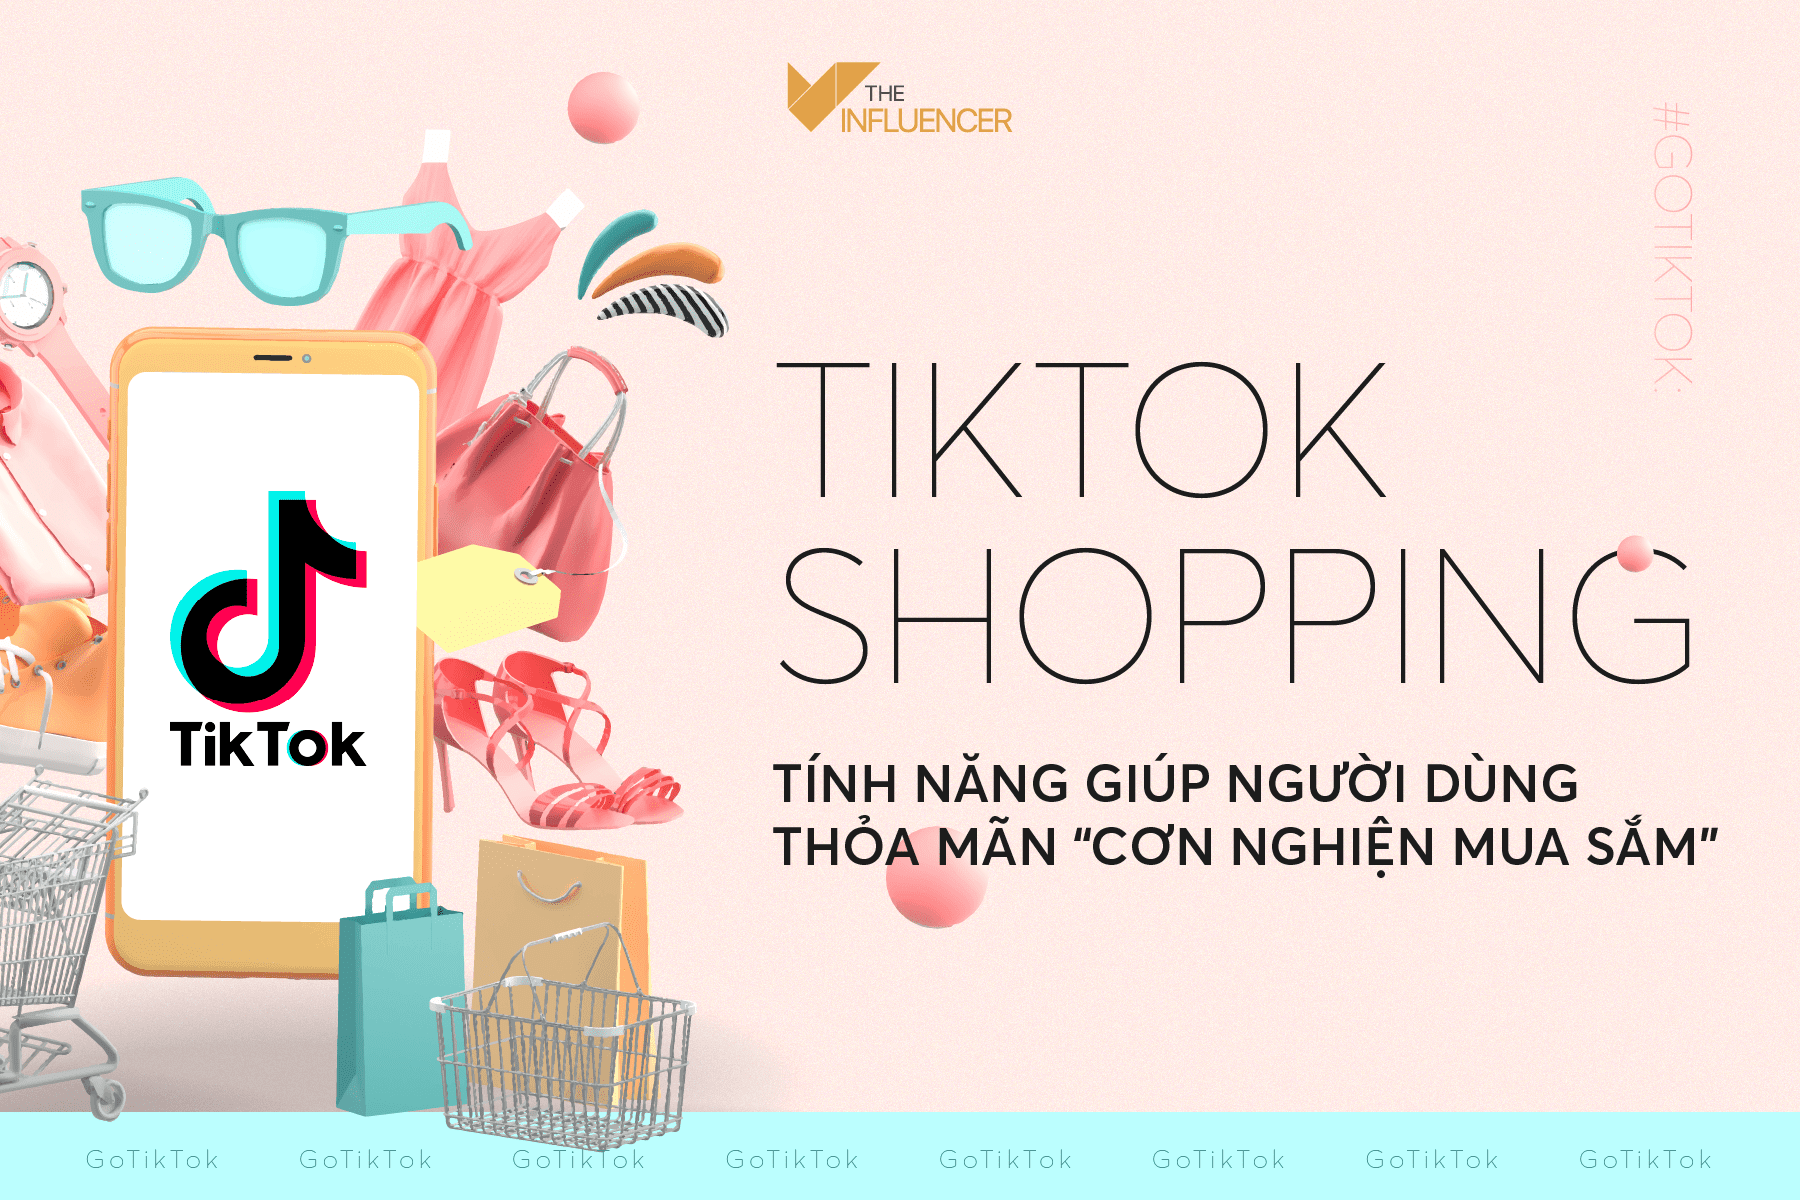 #GoTikTok: TikTok Shopping - Tính năng giúp người dùng thỏa mãn “cơn nghiện mua sắm”